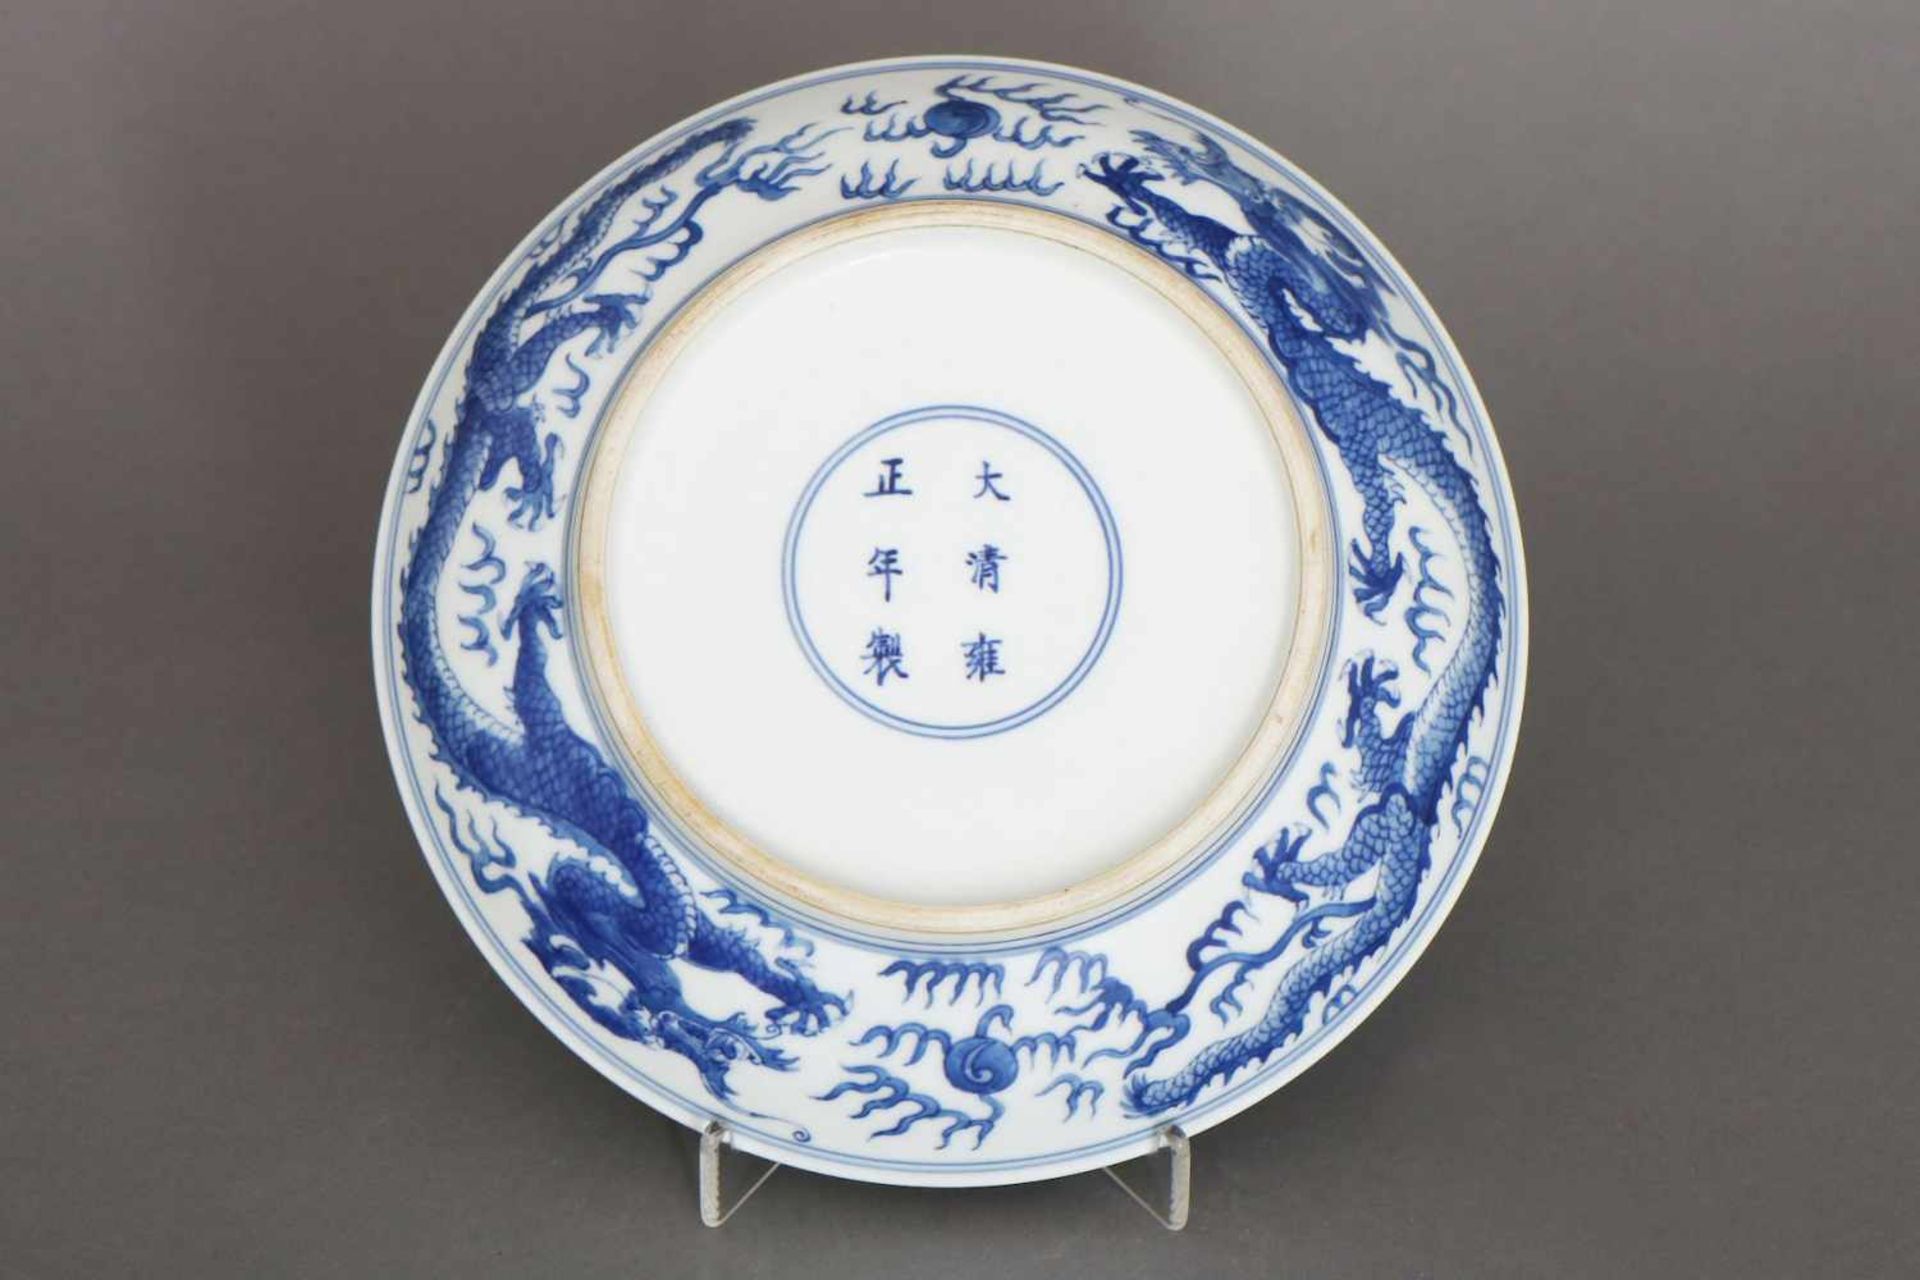 Chinesischer Porzellantellerrunde, vertiefte Form, im Spiegel sowie auf Fahne umlaufend blaues - Bild 2 aus 2